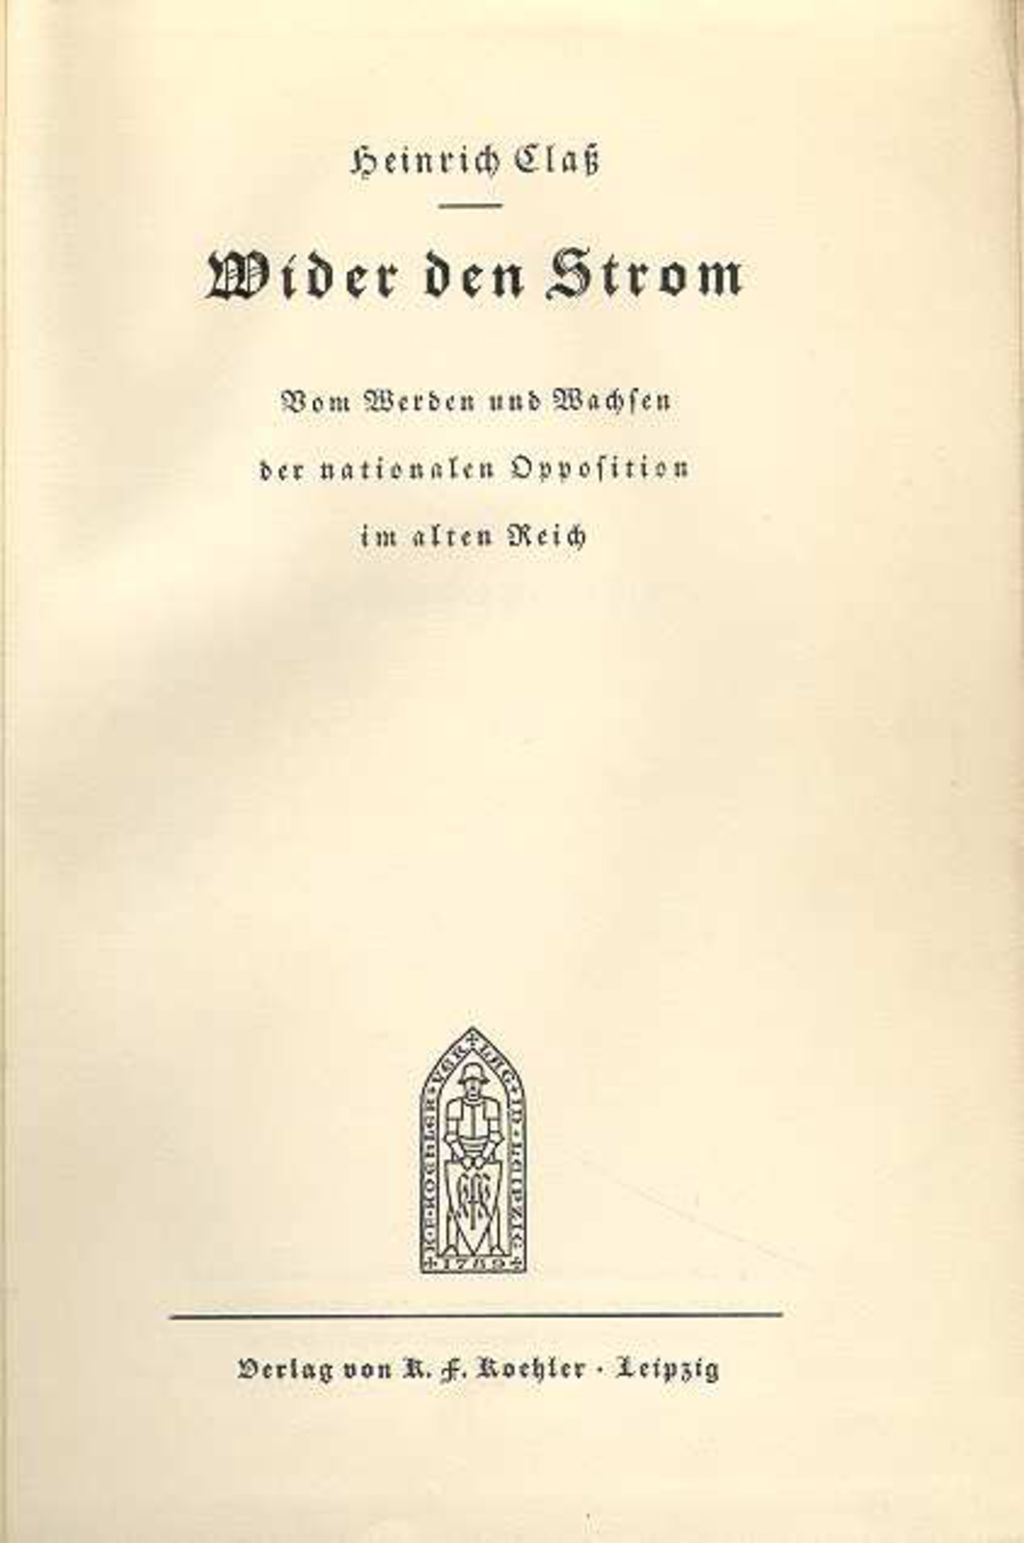 Buch: Claß, Heinrich "Wider den Strom...", 1932